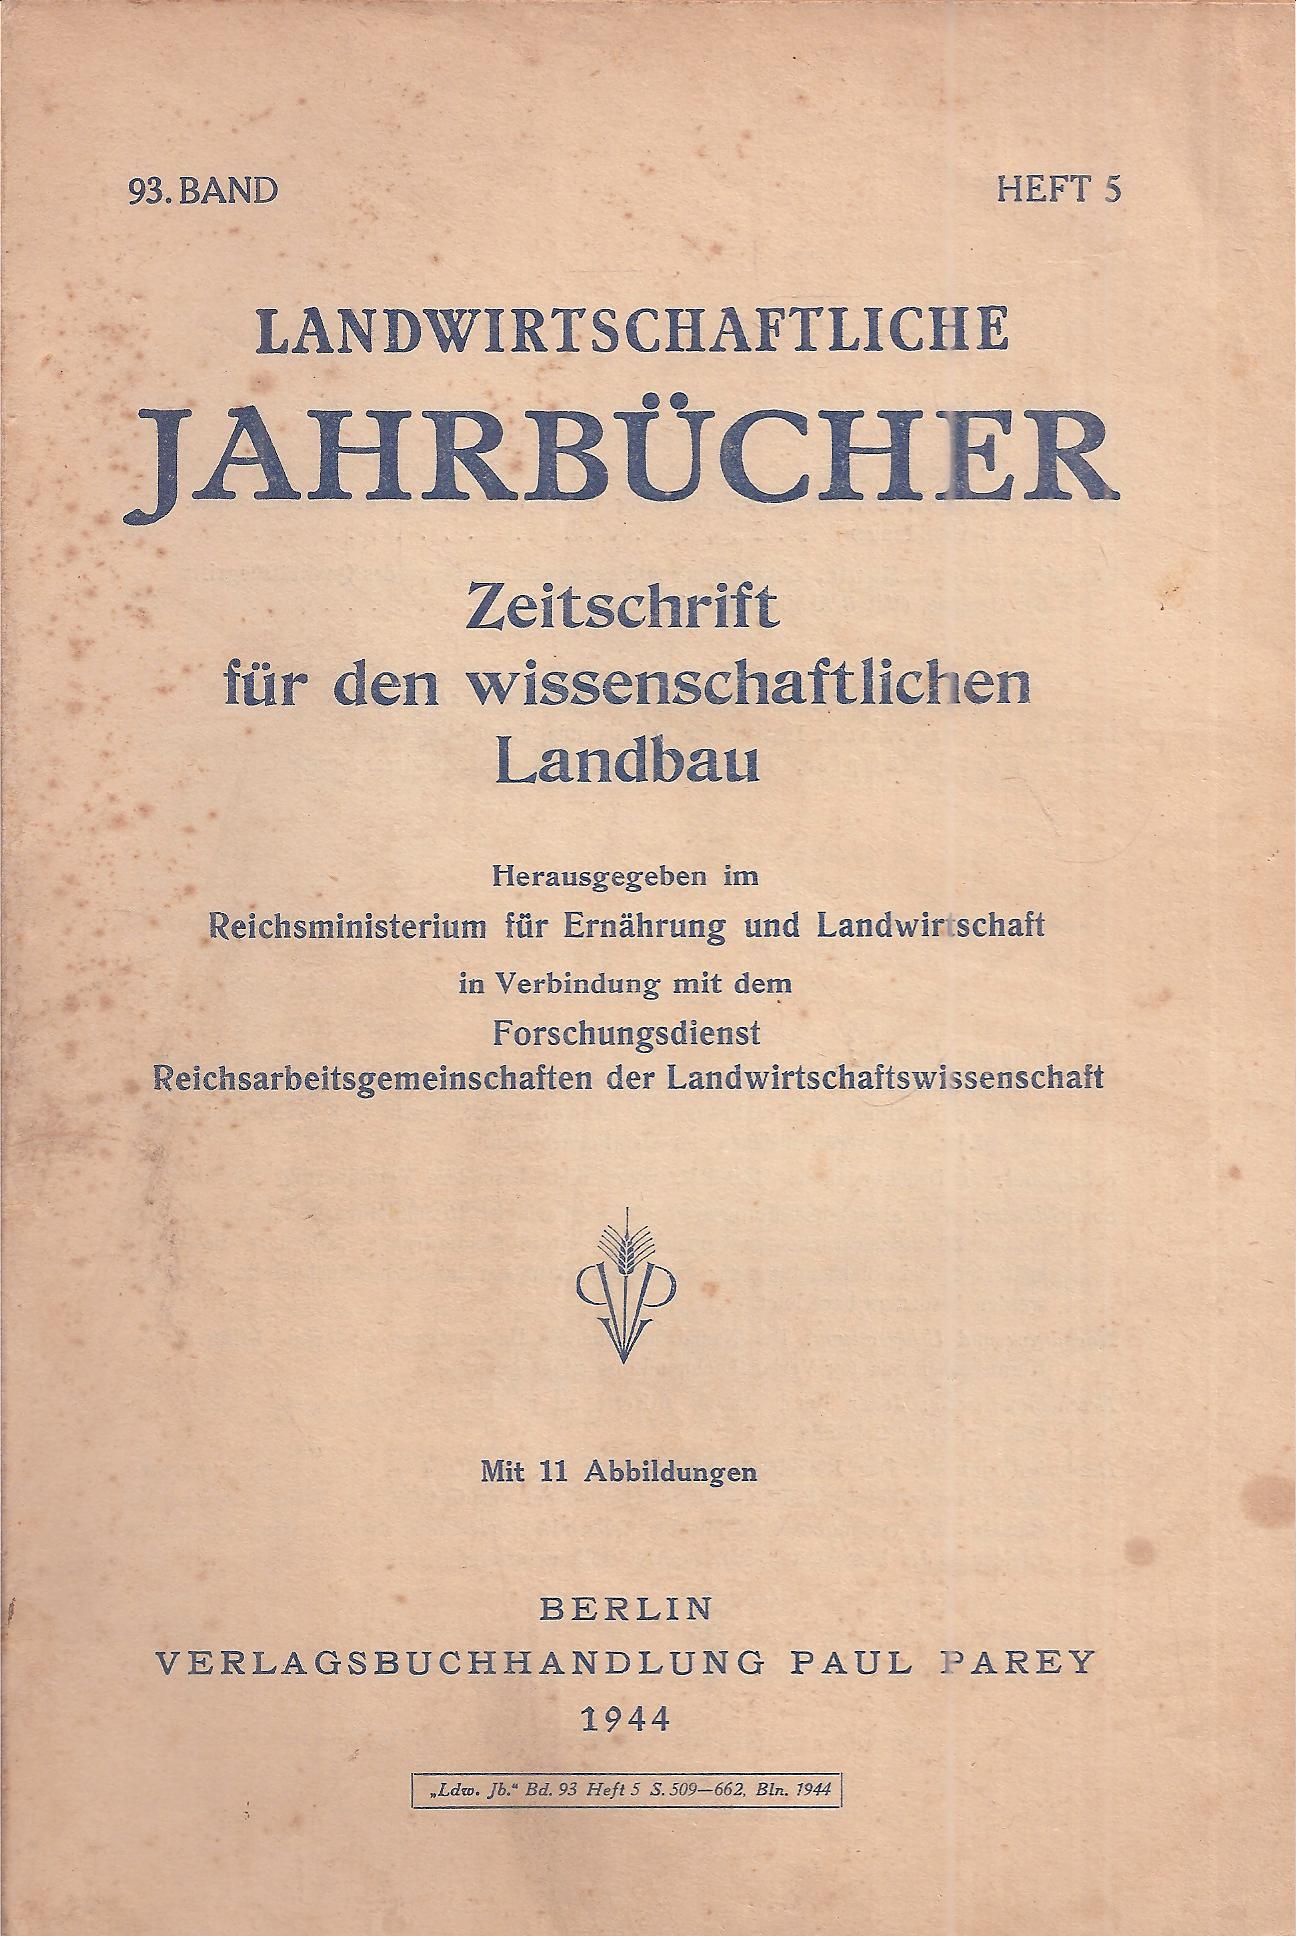 Reichsministerium für Ernährung und Landwirtschaft  Landwirtschaftliche Jahrbücher 93.Band 1943 Heft 5 (1 Heft) 